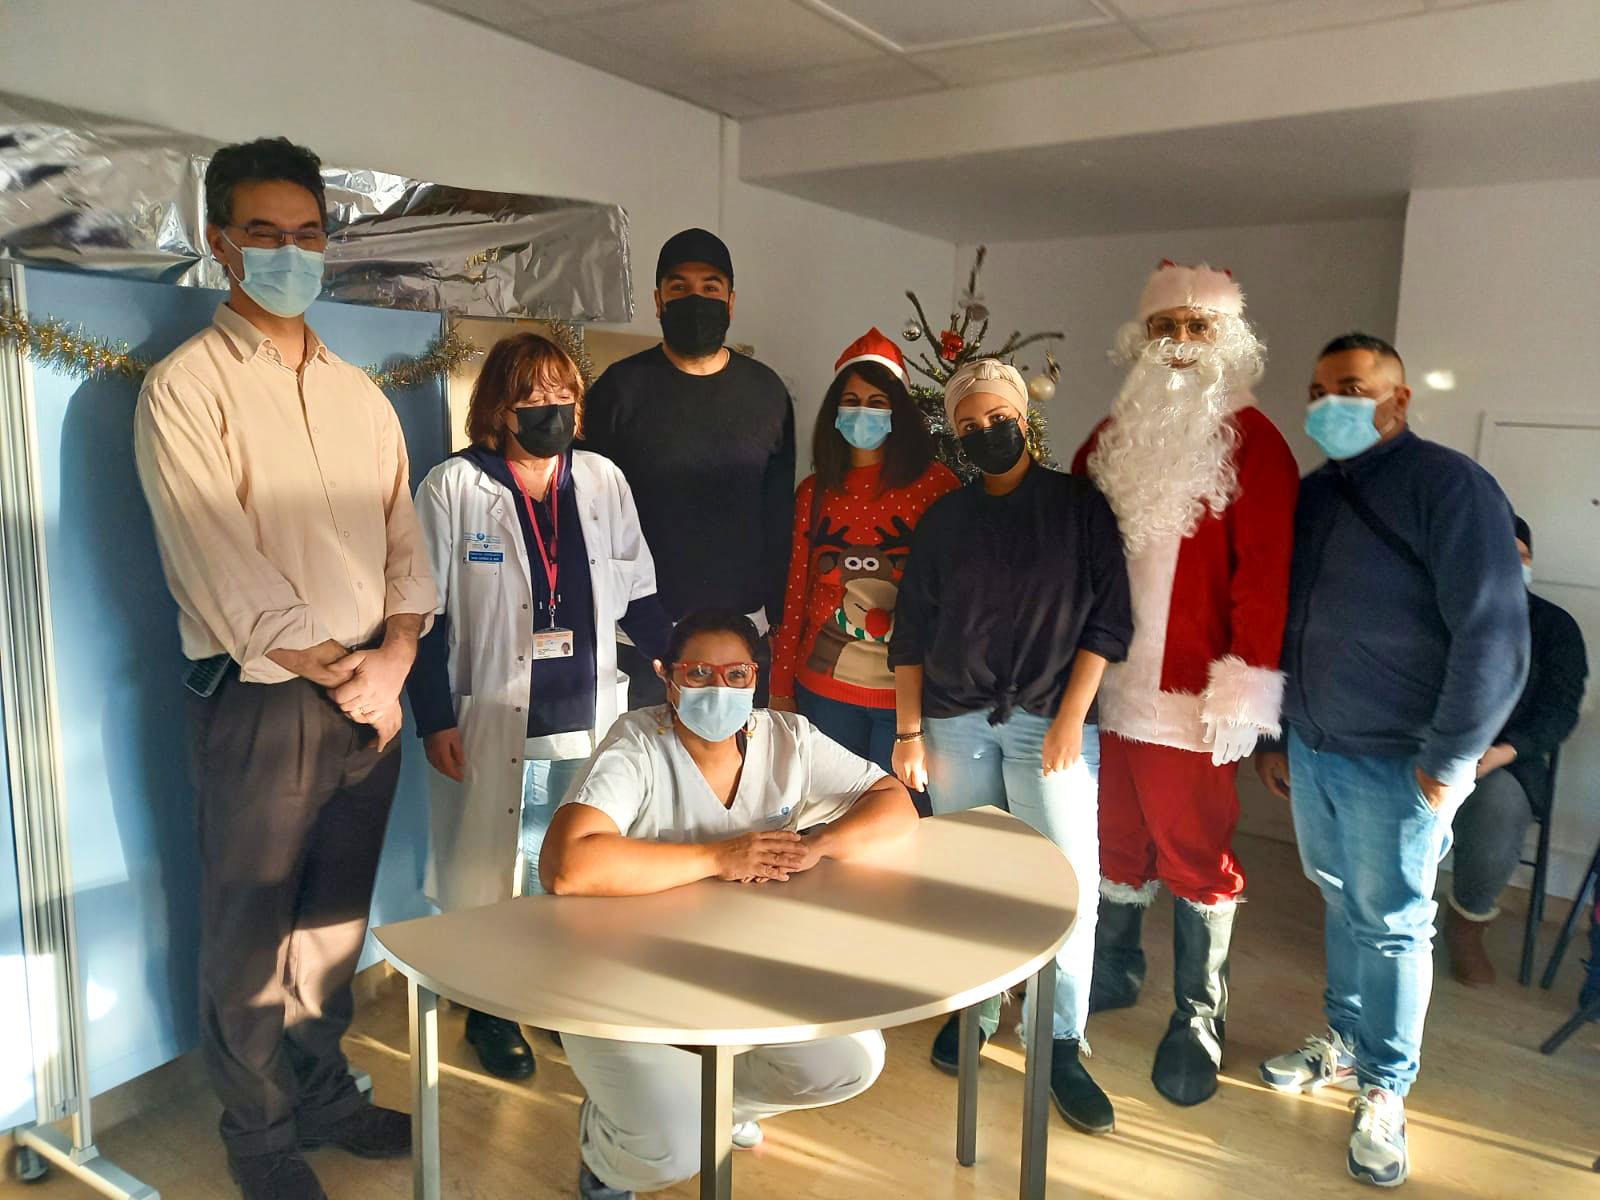 Personnel soignant, père Noël, Kamel le magicien et LHF Espoir à l'hôpital Robert Debré